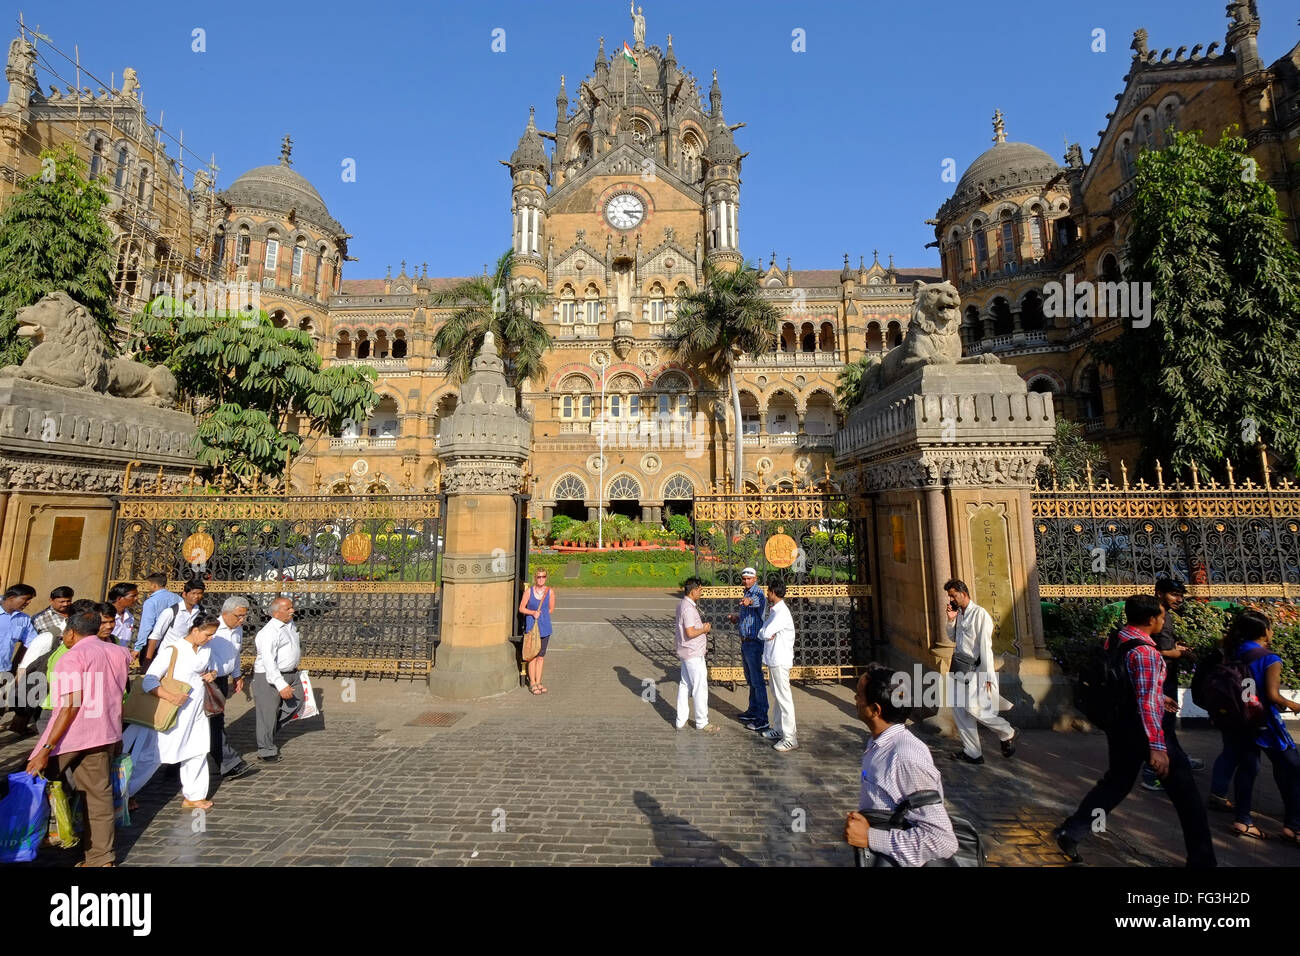 Gare ferroviaire La Gare Chhatrapati Shivaji (CST) , anciennement appelé Victoria Terminus, l'un des plus célèbres édifices de Mumbai Banque D'Images